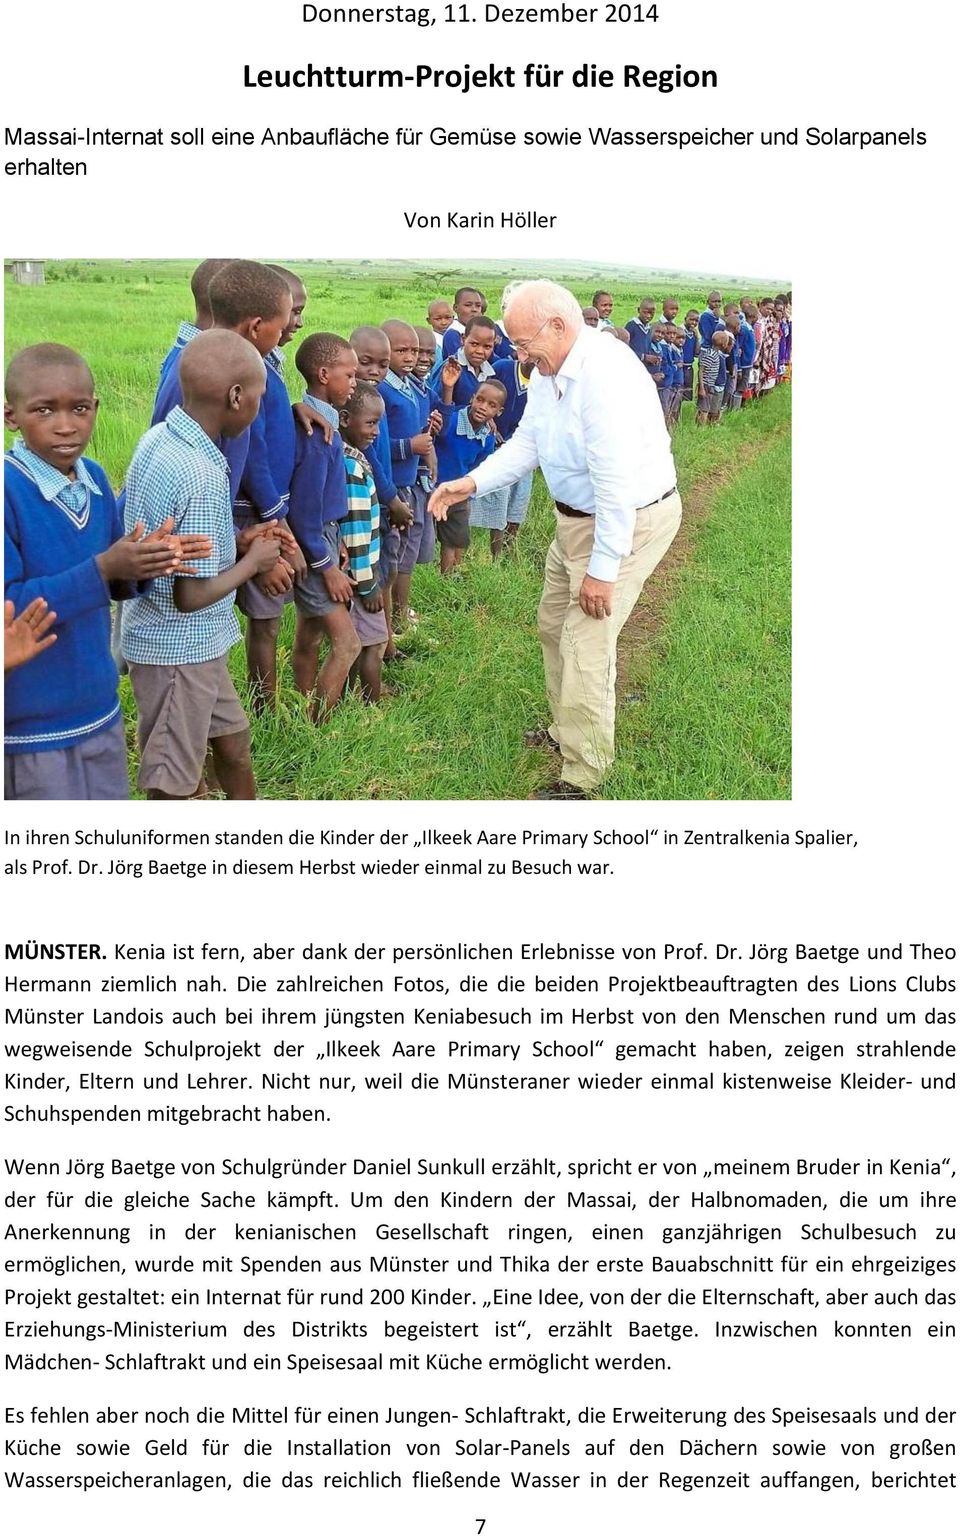 Aare Primary School in Zentralkenia Spalier, als Prof. Dr. Jörg Baetge in diesem Herbst wieder einmal zu Besuch war. MÜNSTER. Kenia ist fern, aber dank der persönlichen Erlebnisse von Prof. Dr. Jörg Baetge und Theo Hermann ziemlich nah.